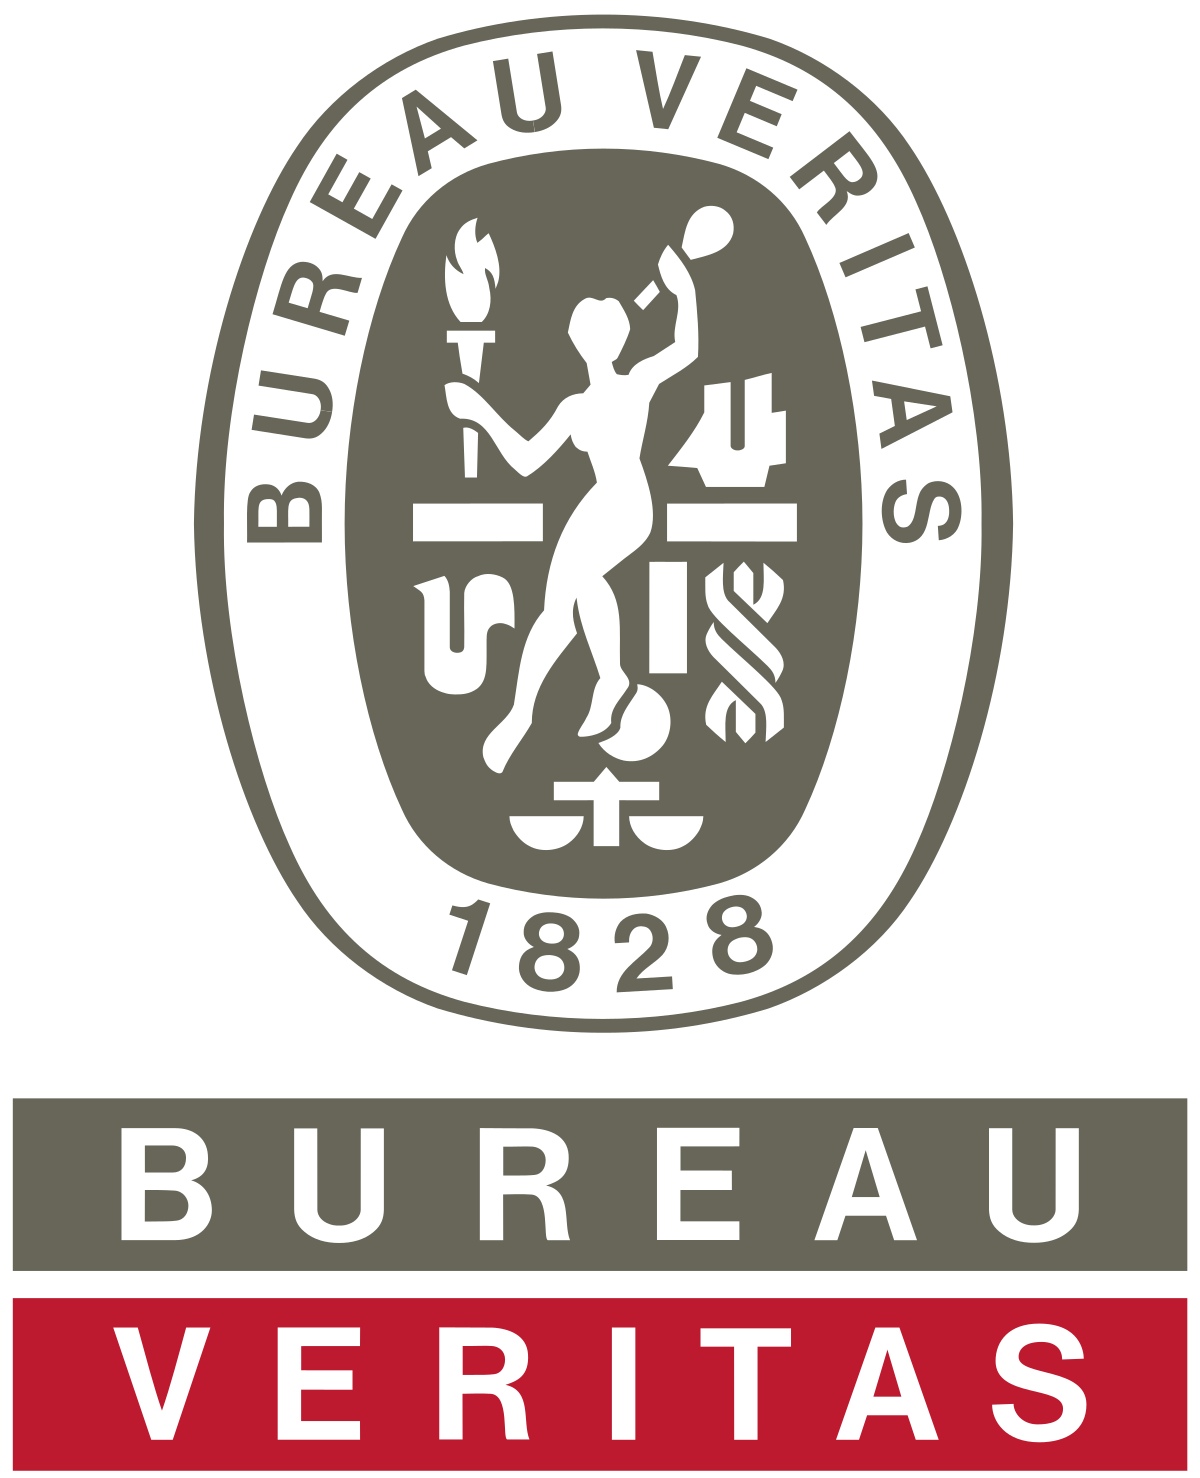 Bureau Veritas India Pvt Ltd logo